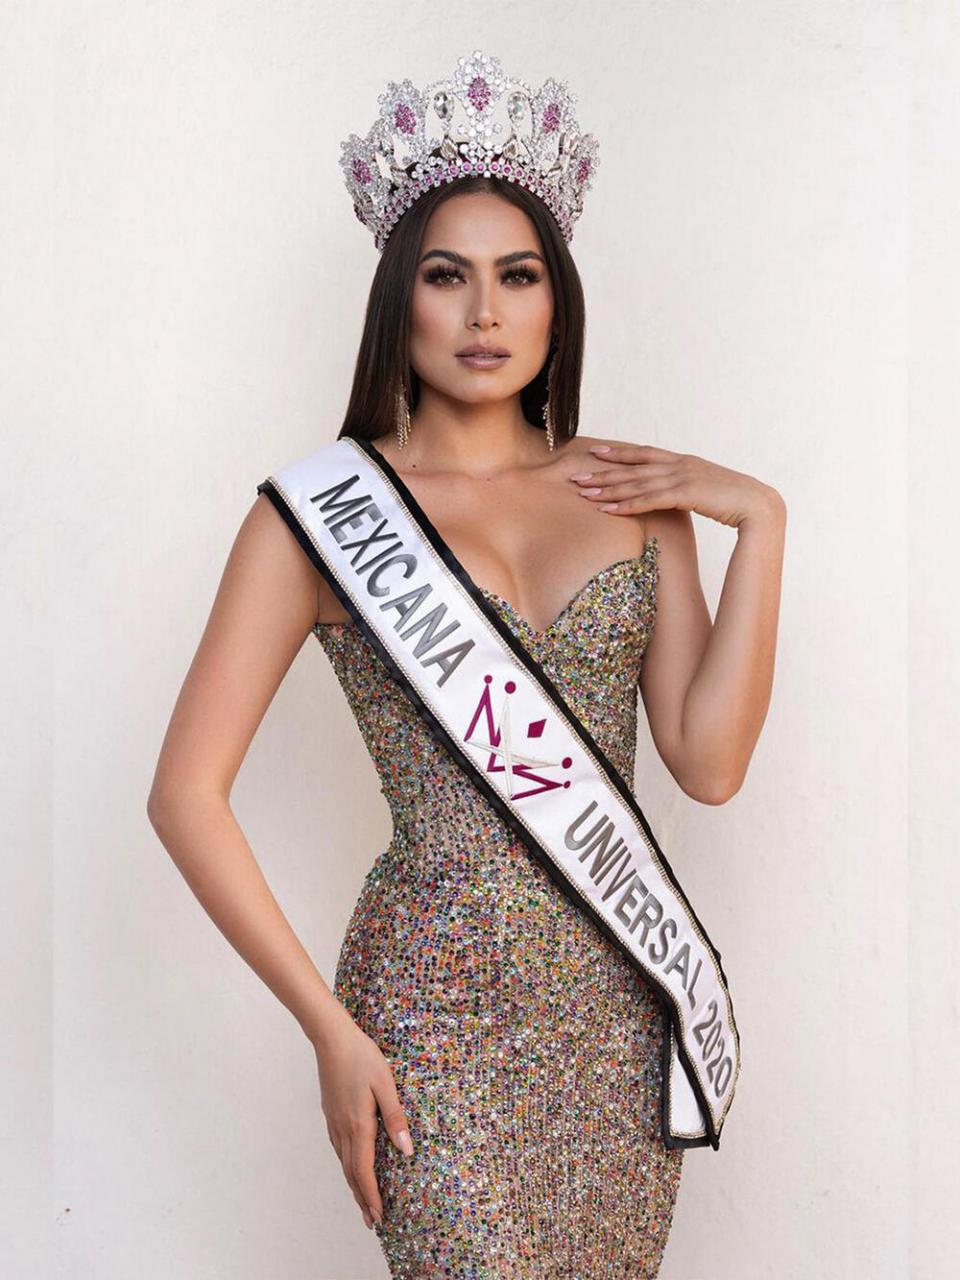 Missosology loại thẳng Khánh Vân ra khỏi Top 20, đưa Philippines Top 5 Miss Universe: Fan phản ứng dữ dội Ảnh 3